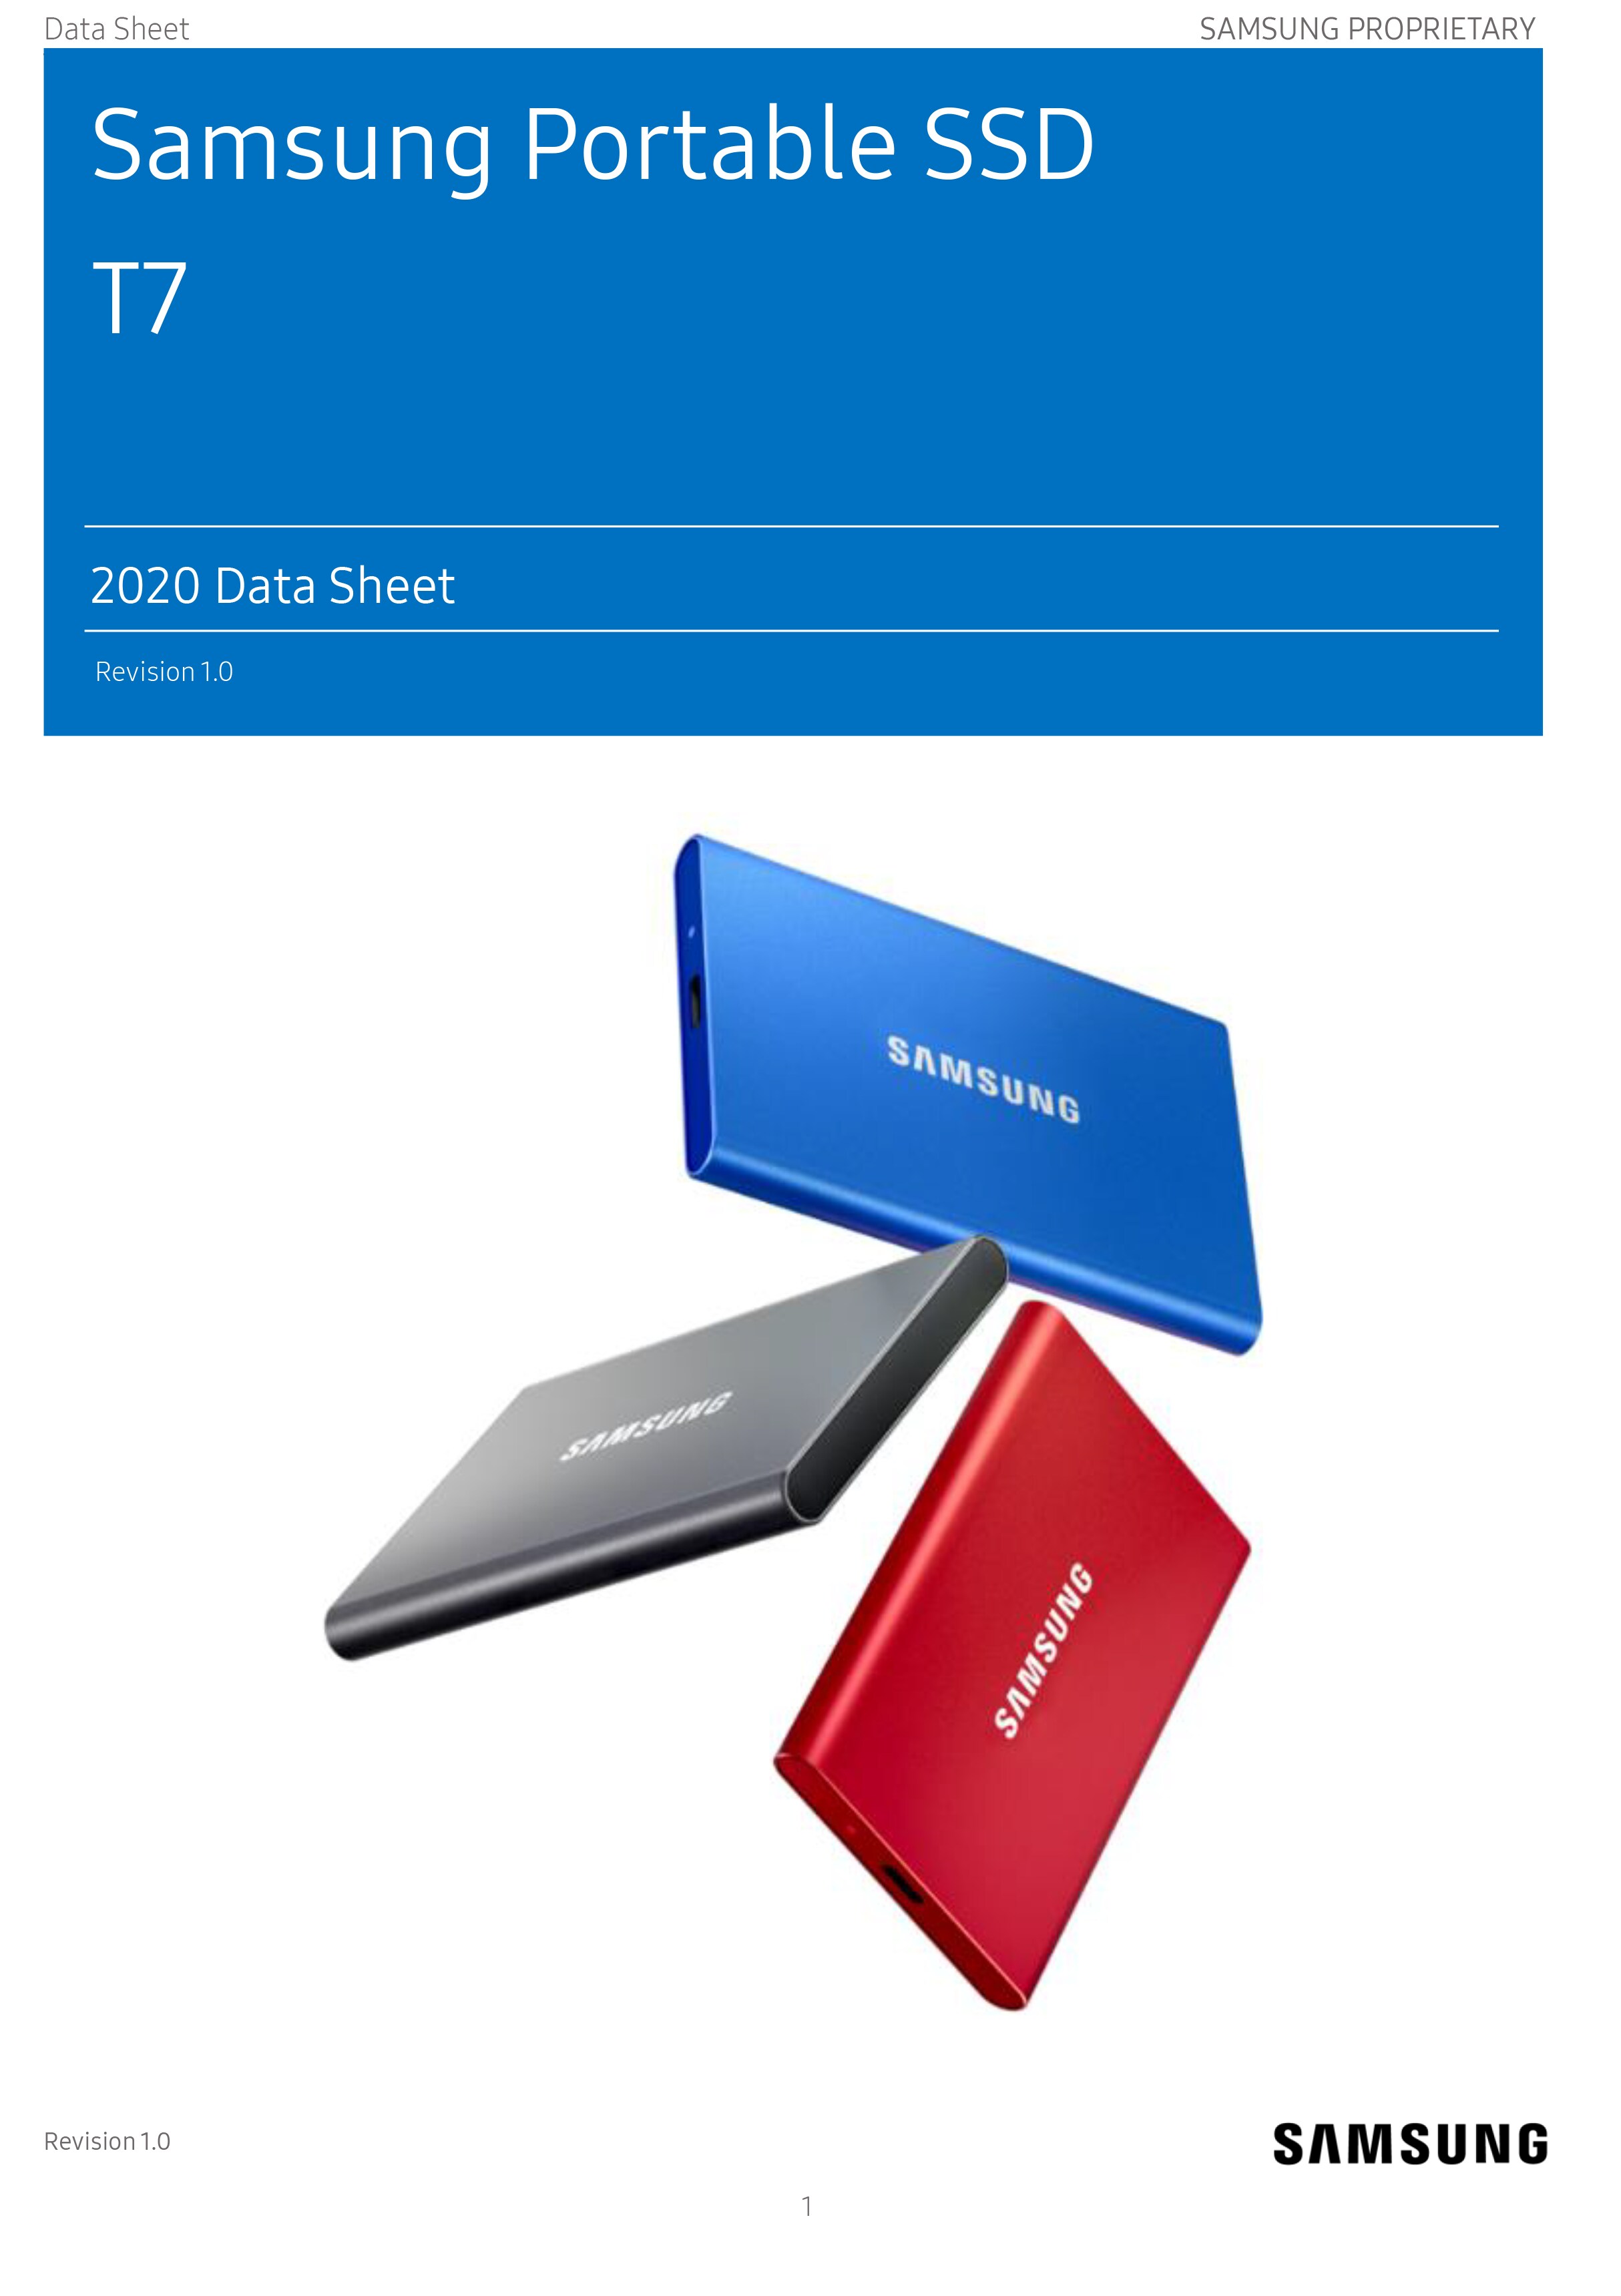 NITZE – support de montage SSD pour SAMSUNG T7 SSD N42-T7, peut